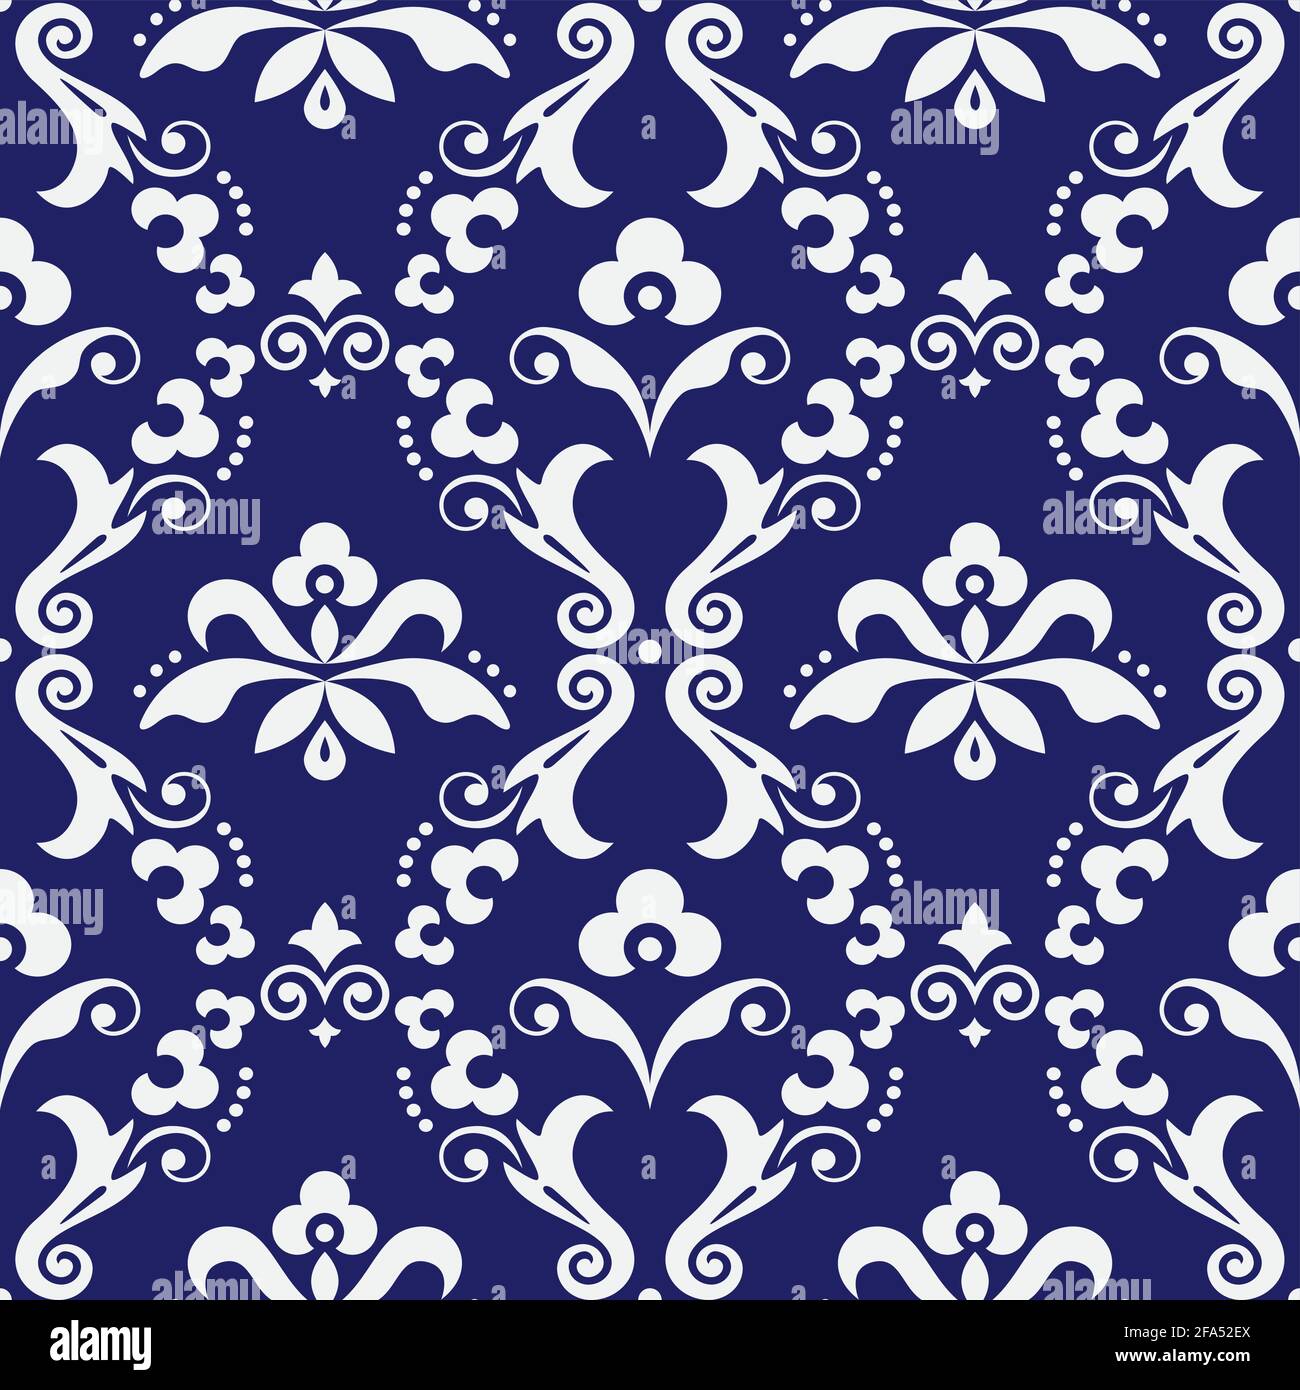 Imprimé en tissu damassé vectoriel ou en farabique, ancien motif victorien répétitif avec fleurs, tourbillons et feuilles en blanc sur bleu marine Illustration de Vecteur